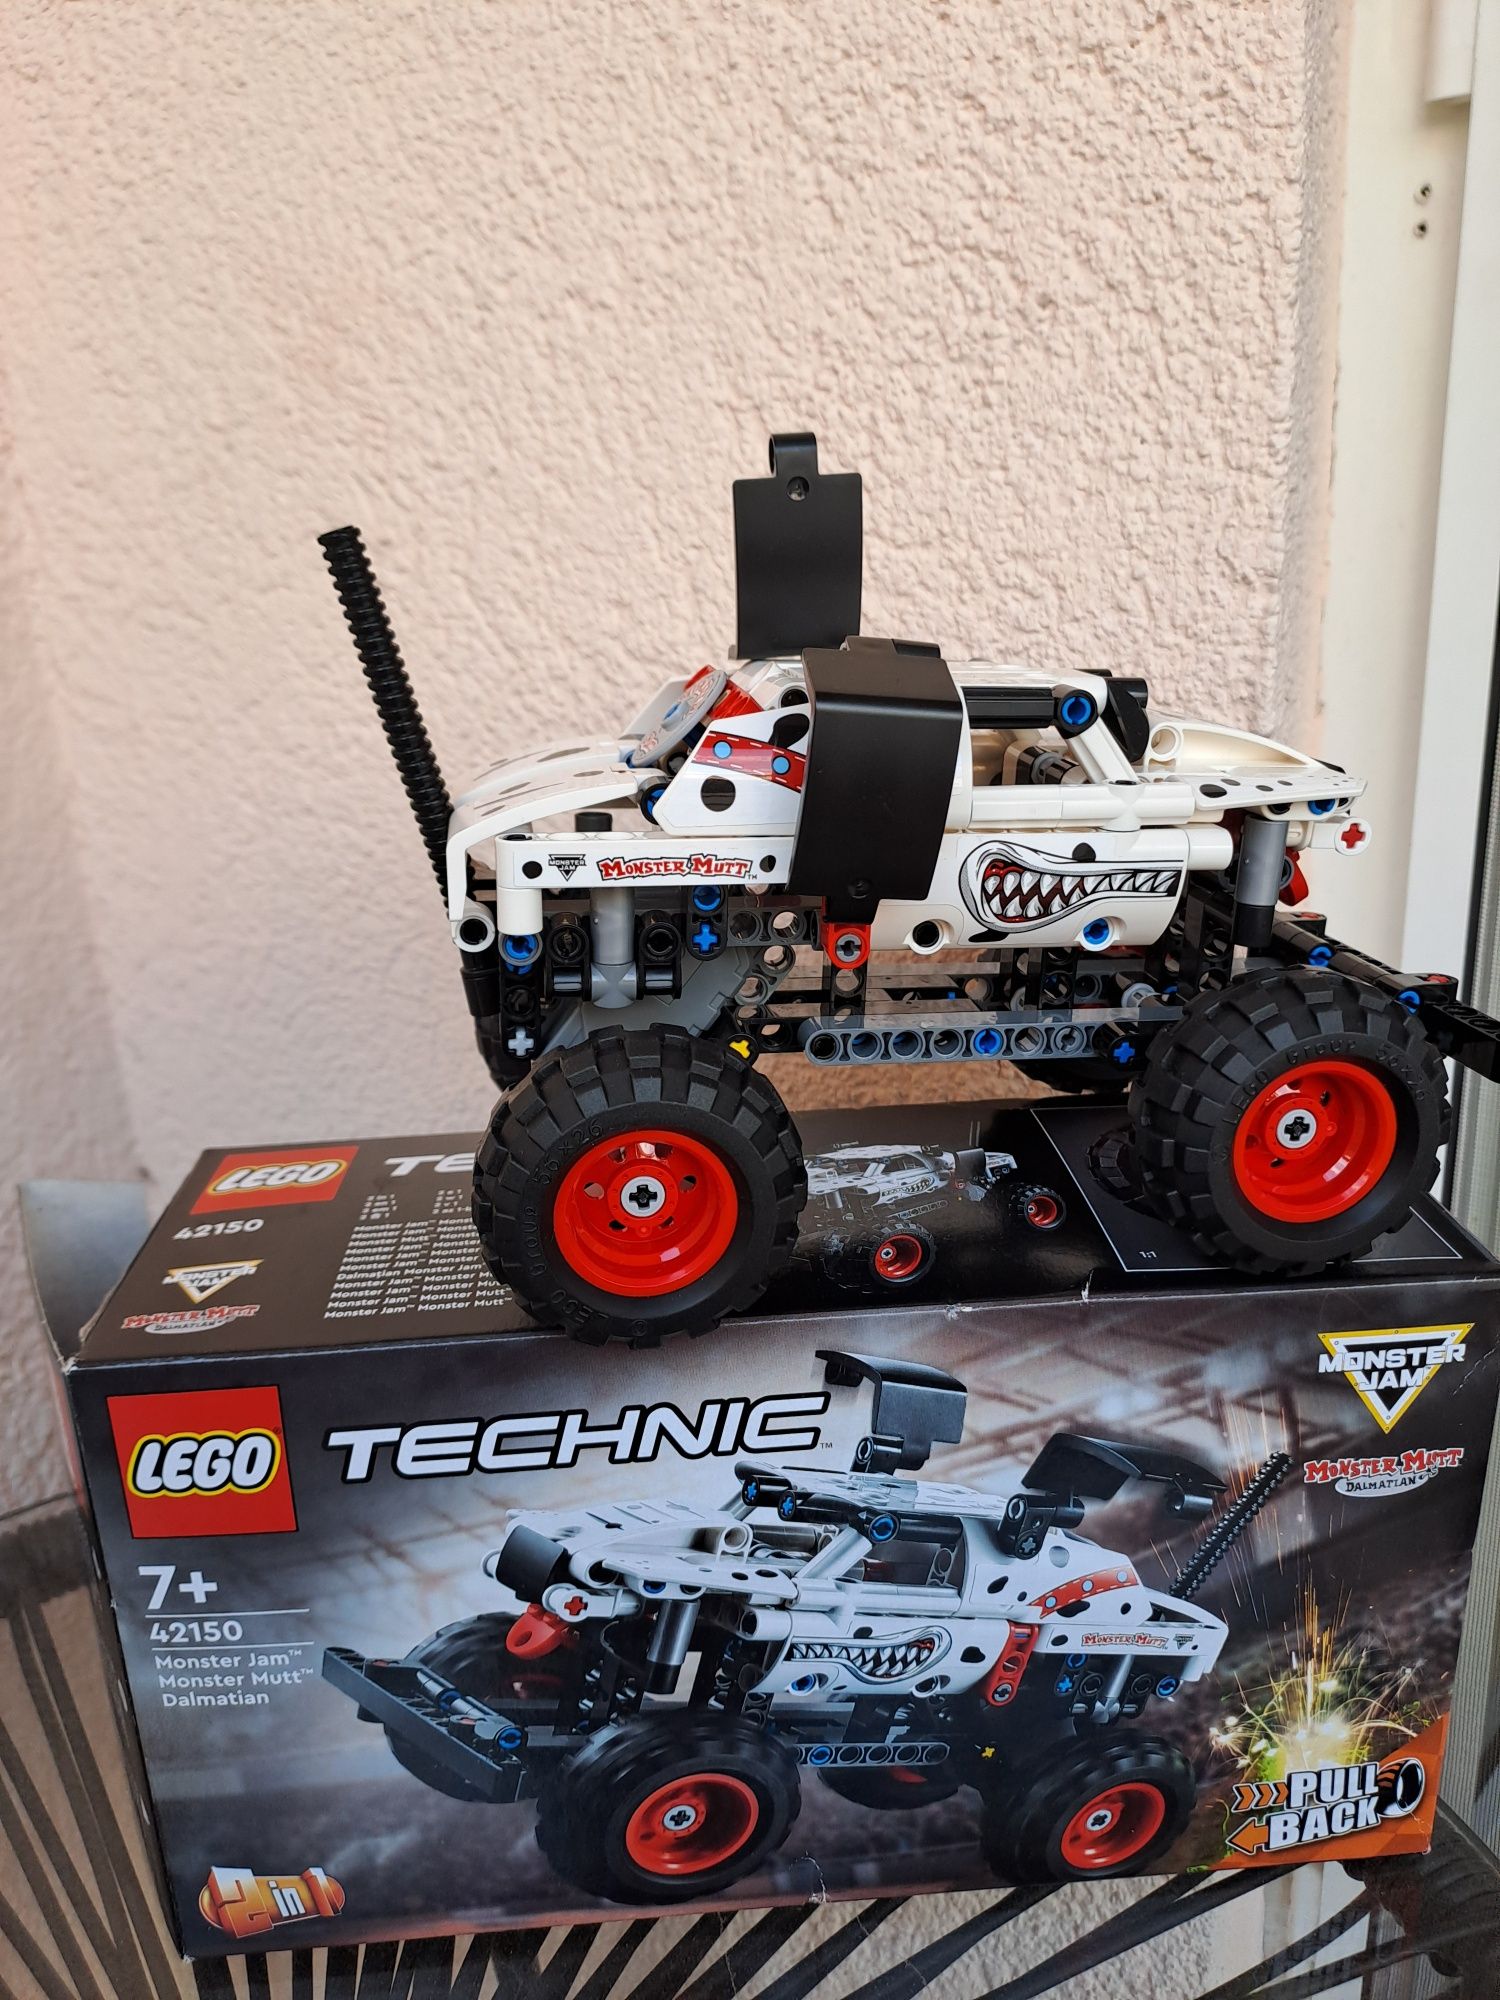 LEGO® Technic - Dalmatian Monster Jam™ Monster Mutt 42150